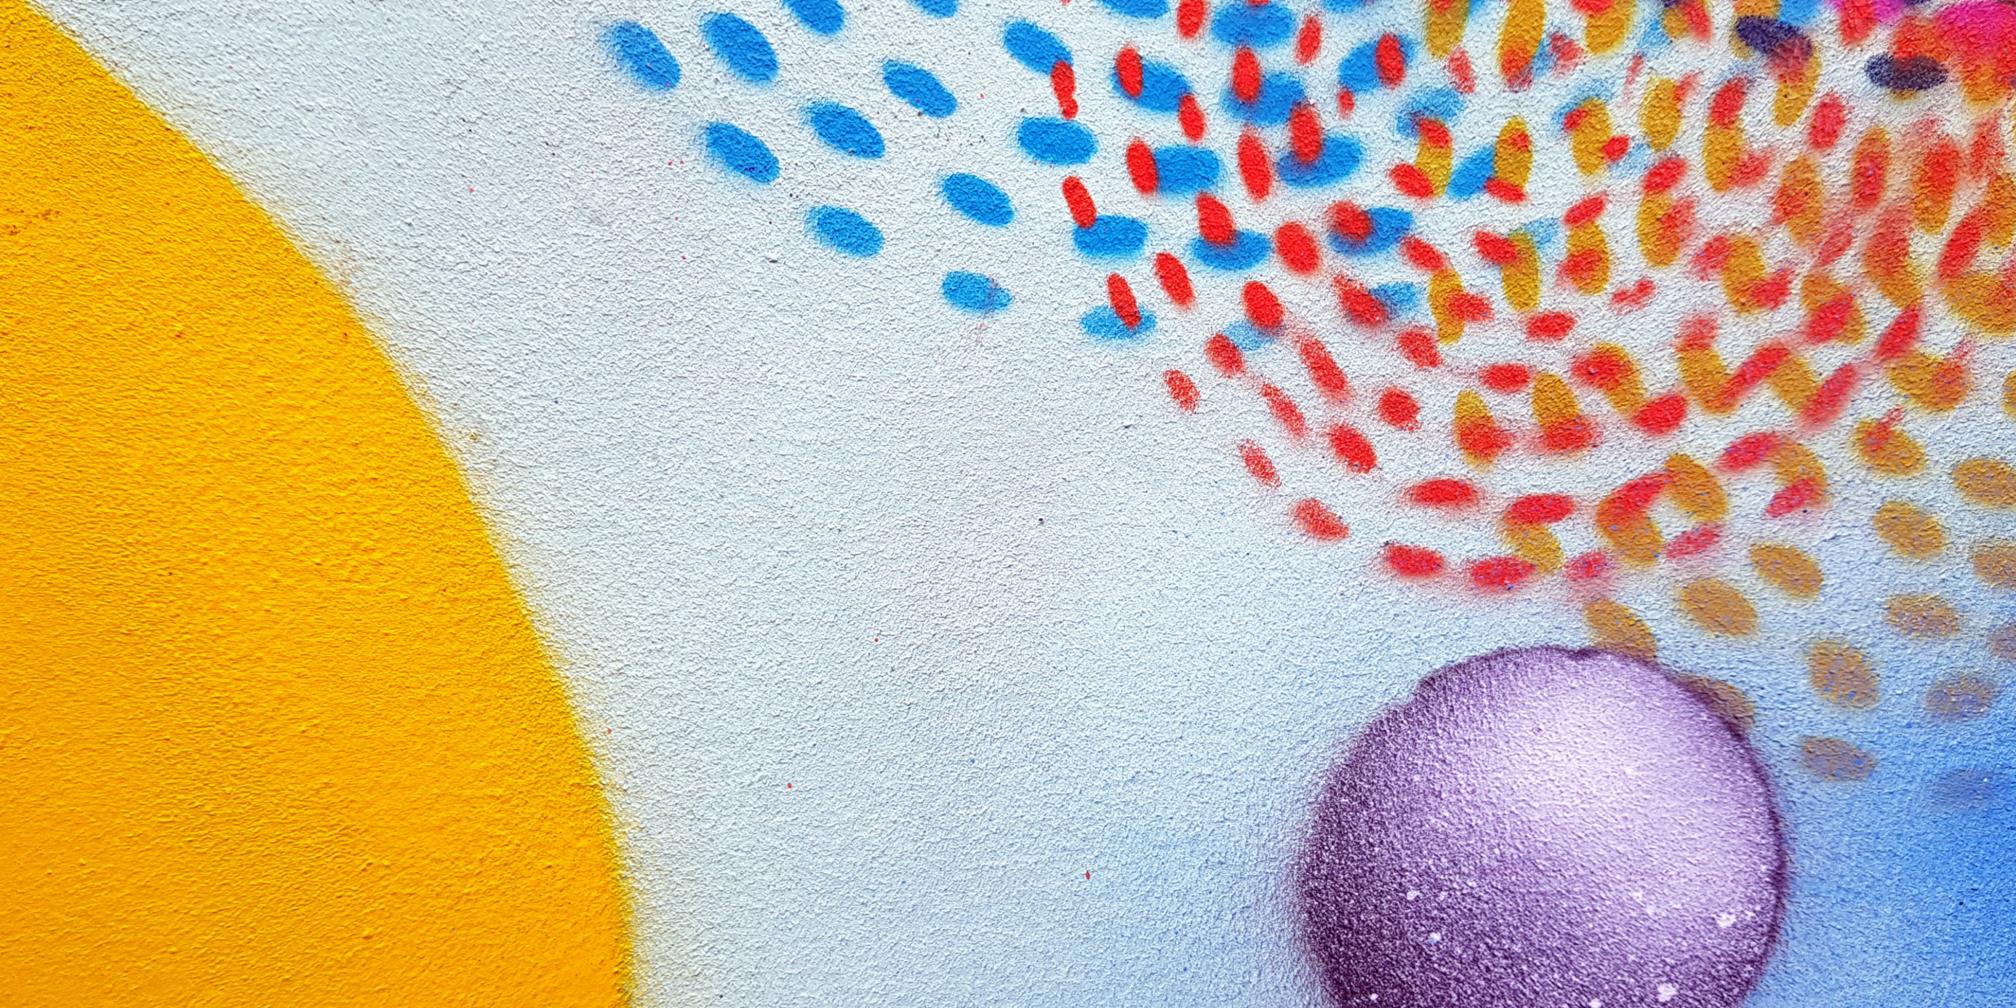 Man sieht Graffiti in Form von Punkten und Kreisen an einer Wand